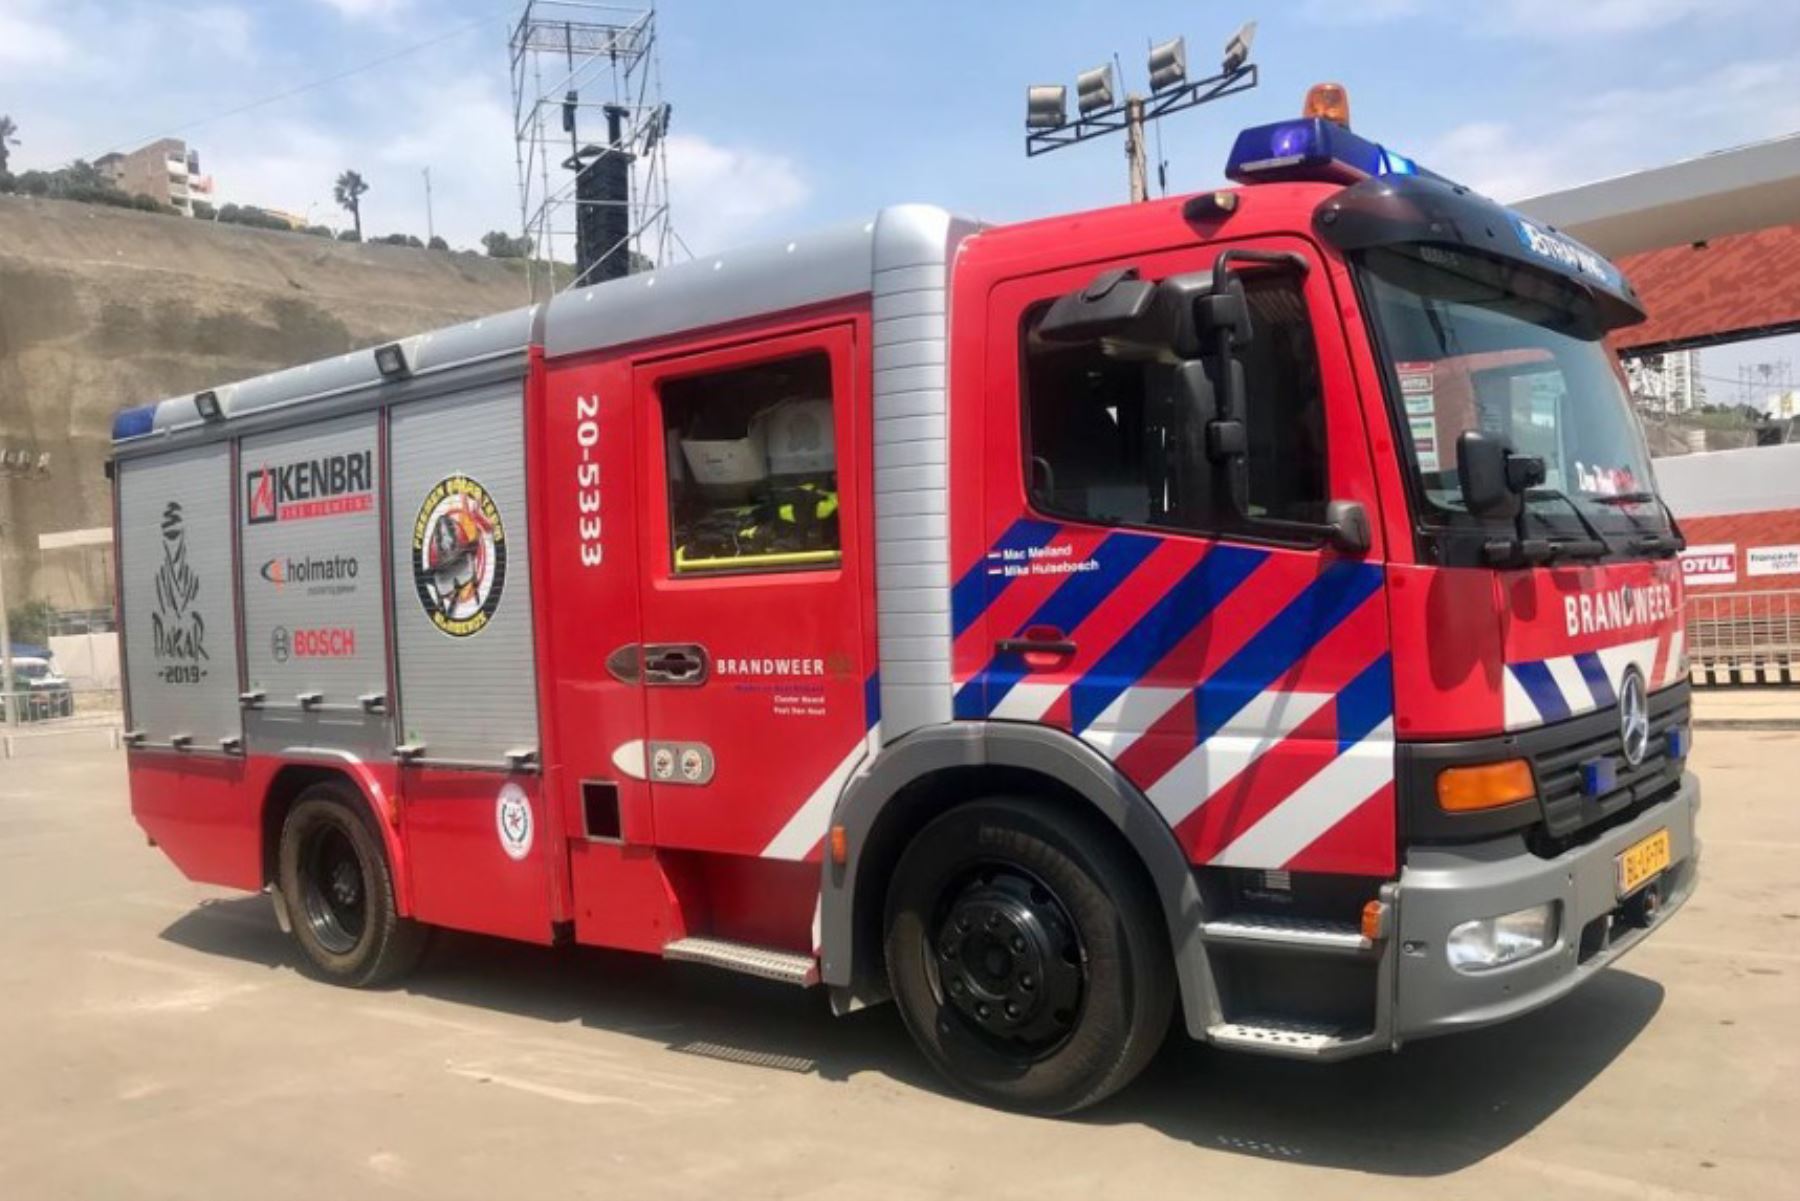 El ministro de Comercio Exterior y Turismo, Edgar Vásquez, agradeció y felicitó hoy al equipo holandés Firemen Dakarteam que participa en el Rally Dakar 2019, por donar un camión contraincendios para el Cuerpo General de Bomberos Voluntarios del Perú (CGBVP).